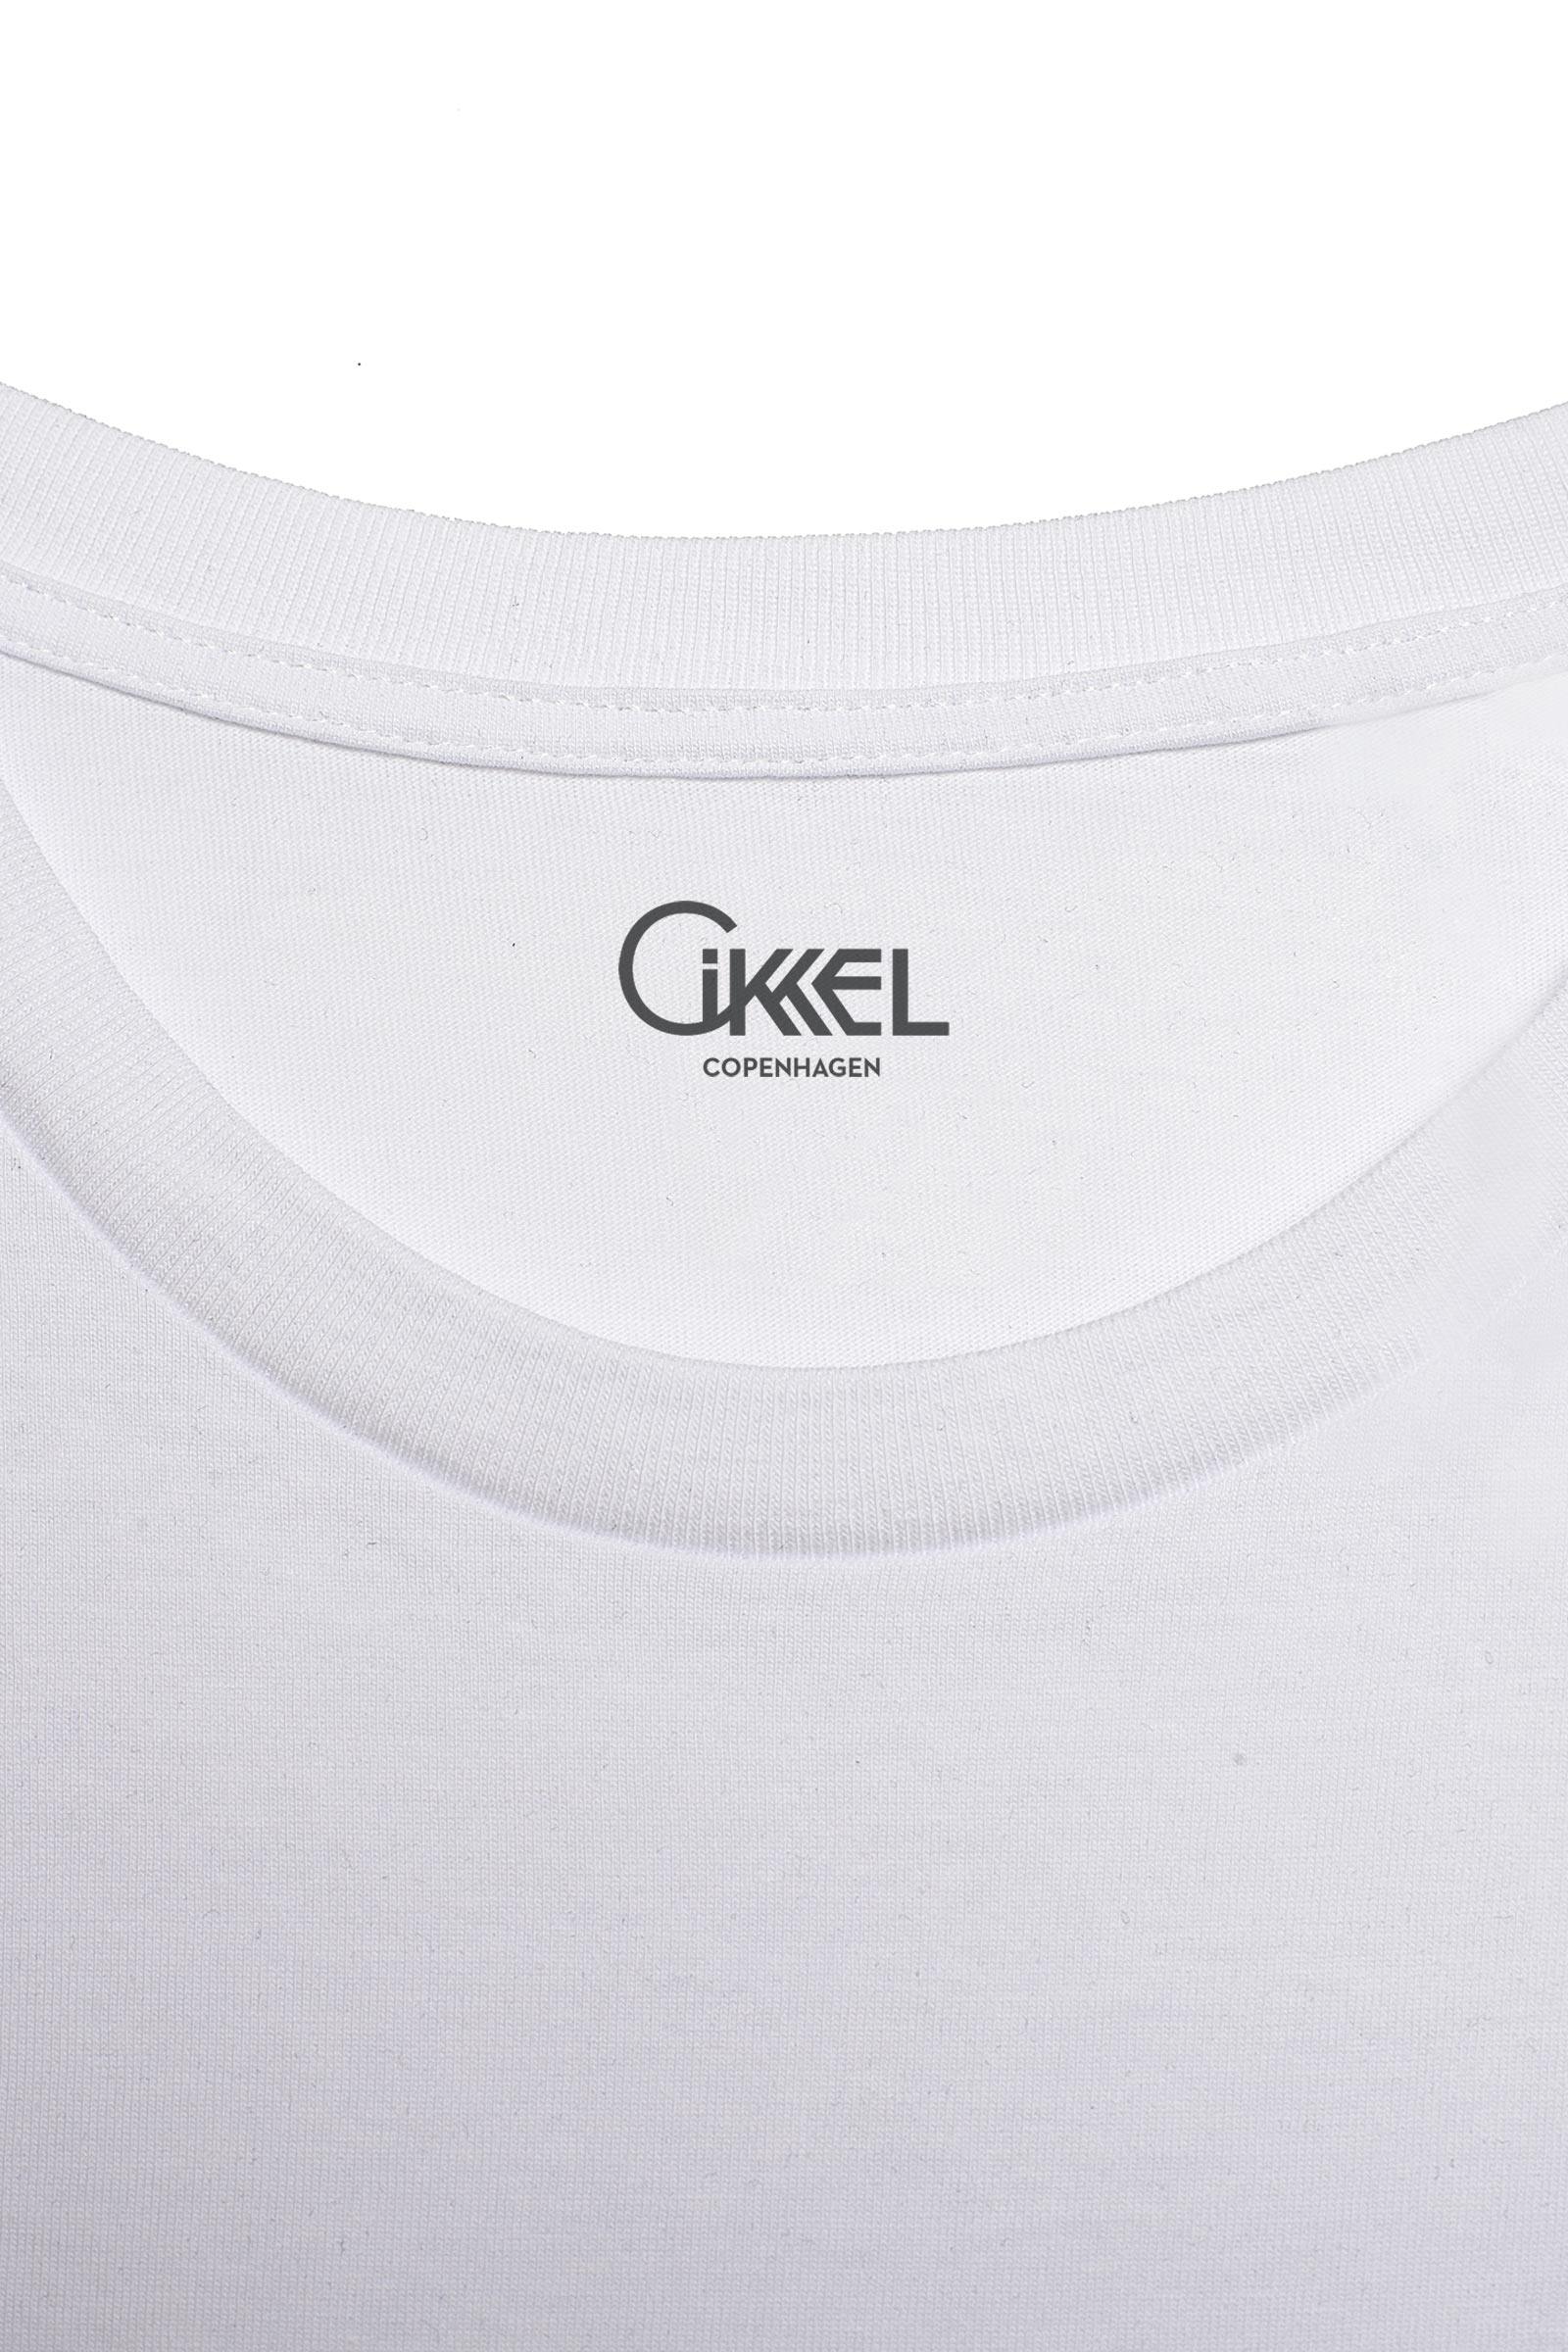 The Full Package - Cikkel